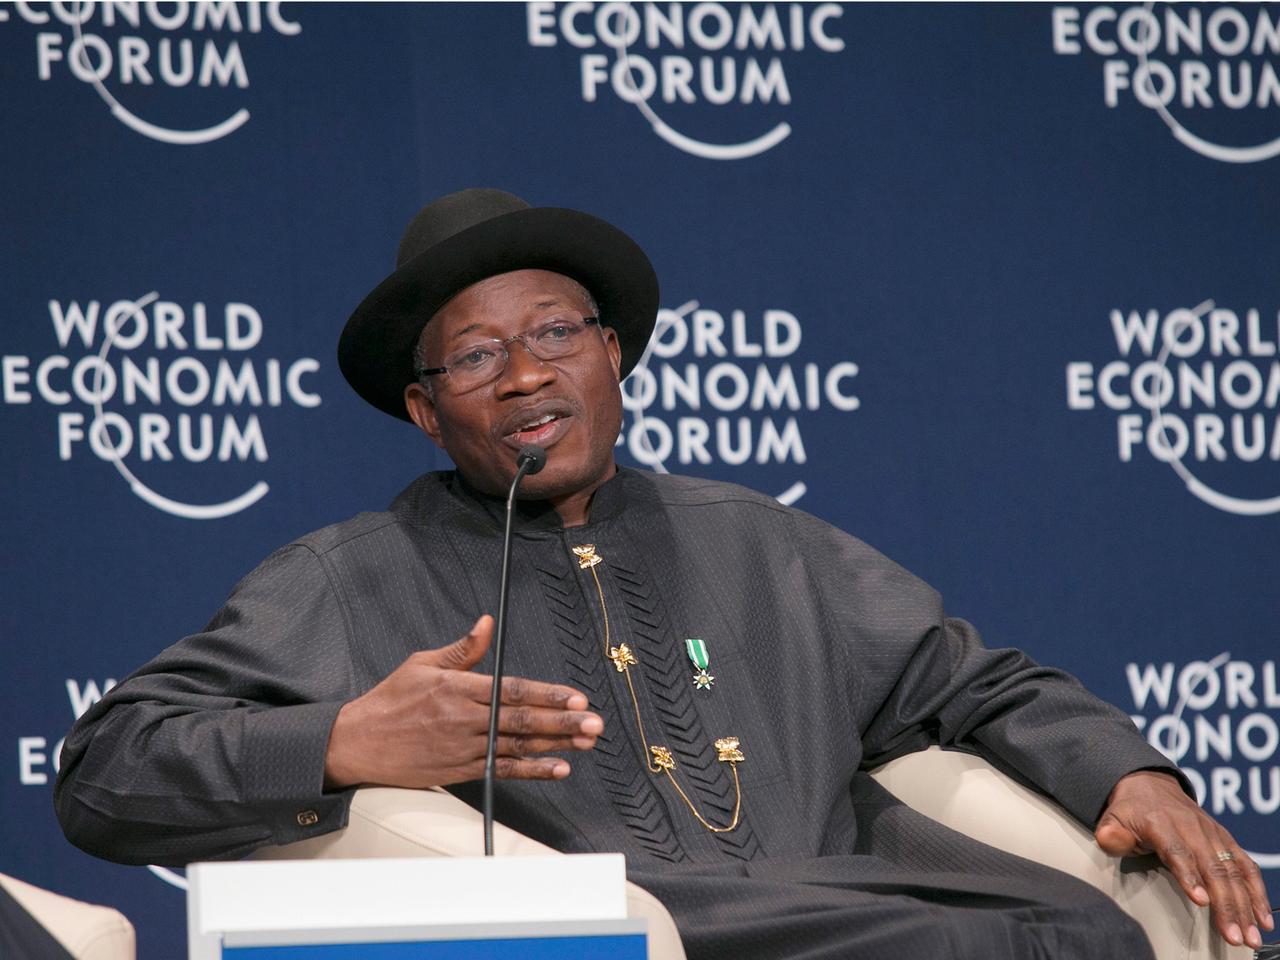 Nigerias Präsident Goodluck Jonathan beim Weltwirtschaftsforum in Abuja, Nigeria am 8. Mai 2014